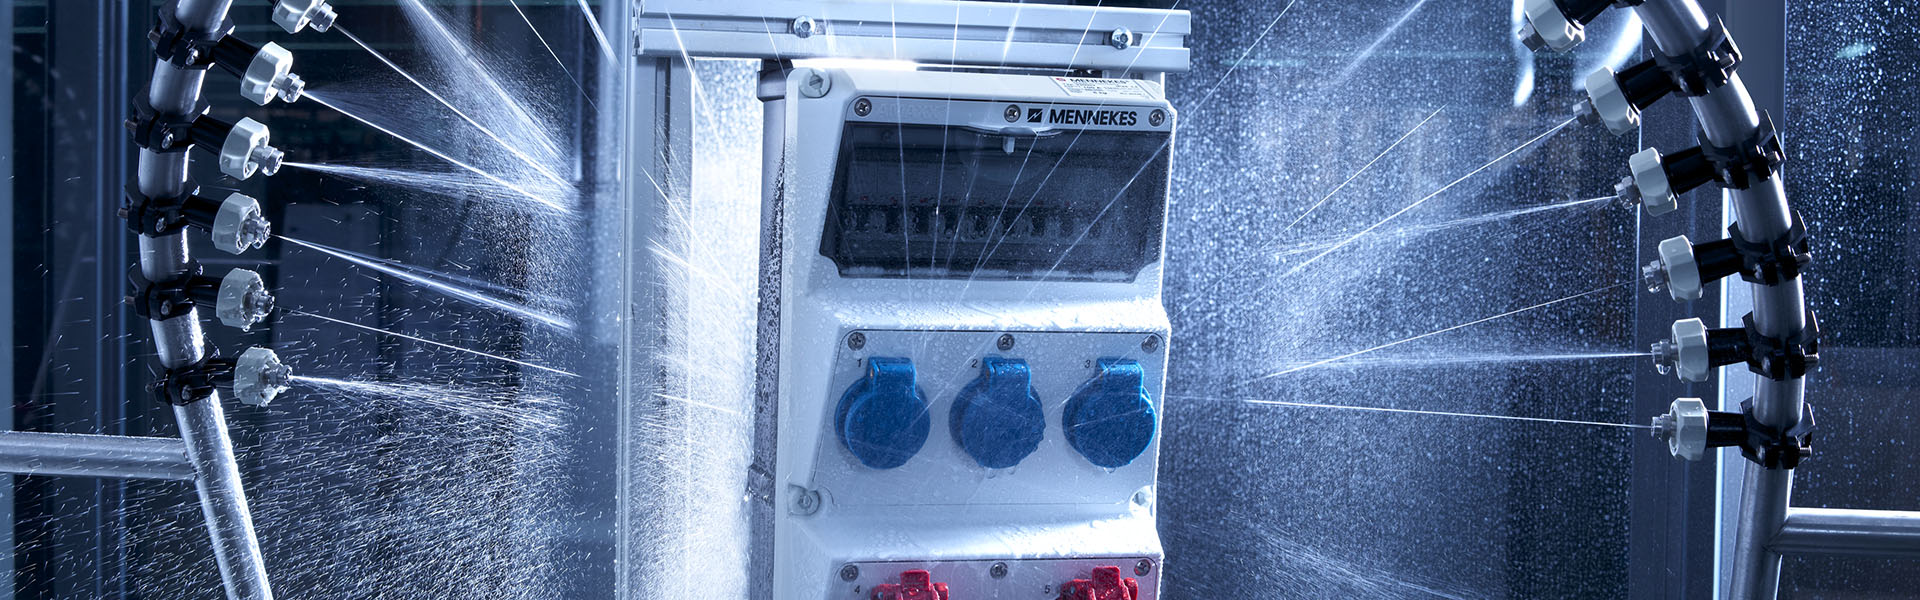 Abbildung einer AMAXX Steckdosenkombination von MENNEKES, die in einem Labor zu Qualitätszwecken mit Wasser bespritzt wird.